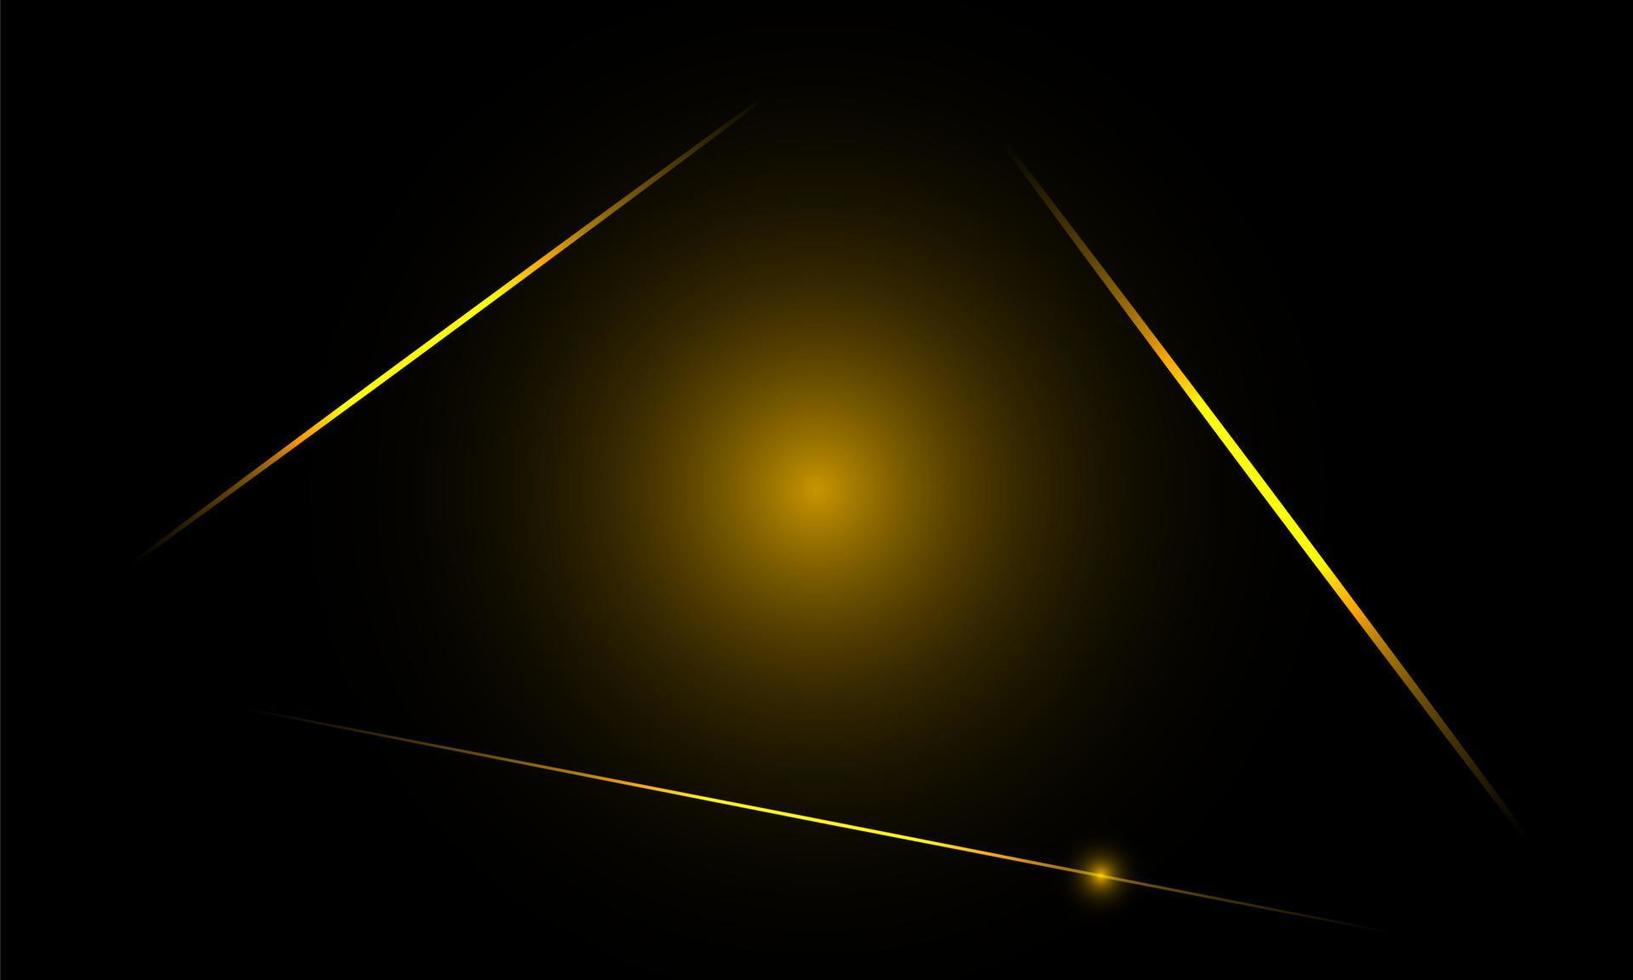 abstrakt linjemönster lyx guld med mörk bakgrund. illustration vektor design digital teknik koncept.